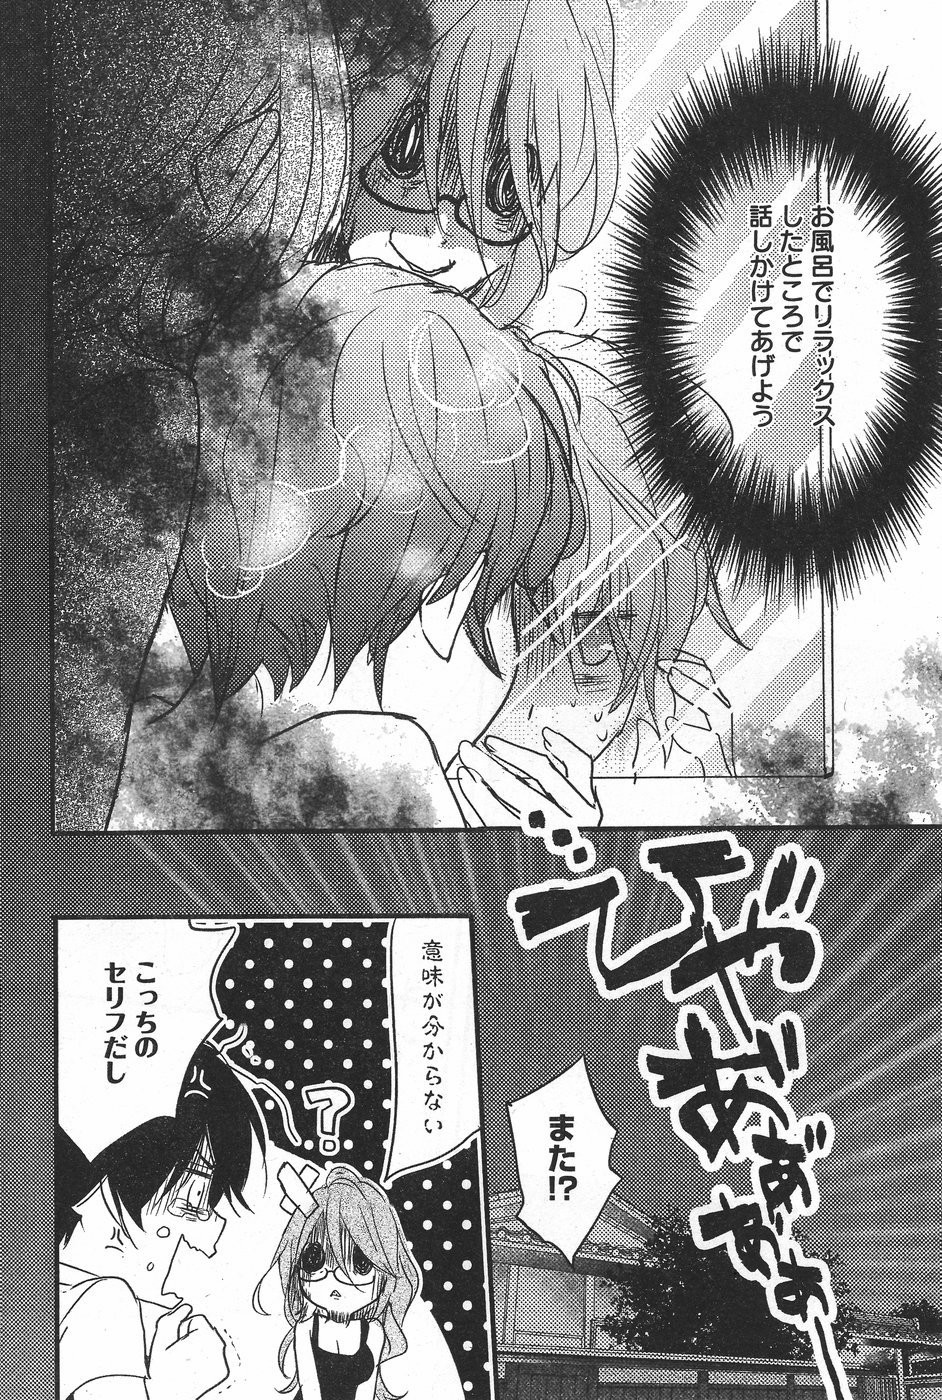 Bokura wa Minna Kawaisou - Chapter 71 - Page 16